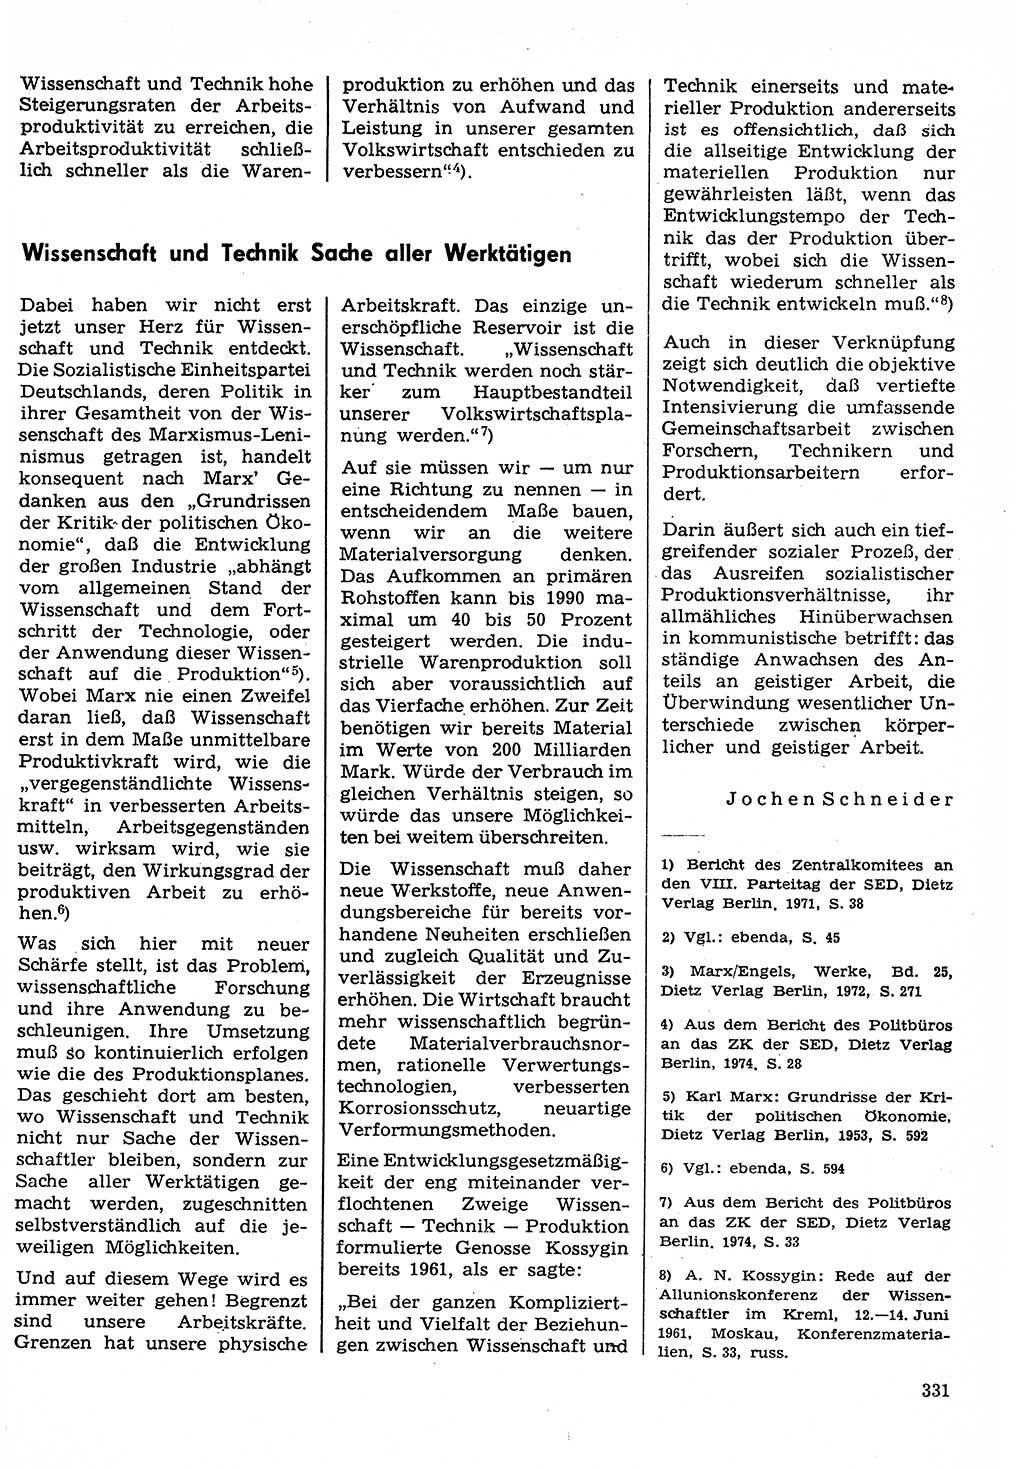 Neuer Weg (NW), Organ des Zentralkomitees (ZK) der SED (Sozialistische Einheitspartei Deutschlands) für Fragen des Parteilebens, 30. Jahrgang [Deutsche Demokratische Republik (DDR)] 1975, Seite 331 (NW ZK SED DDR 1975, S. 331)